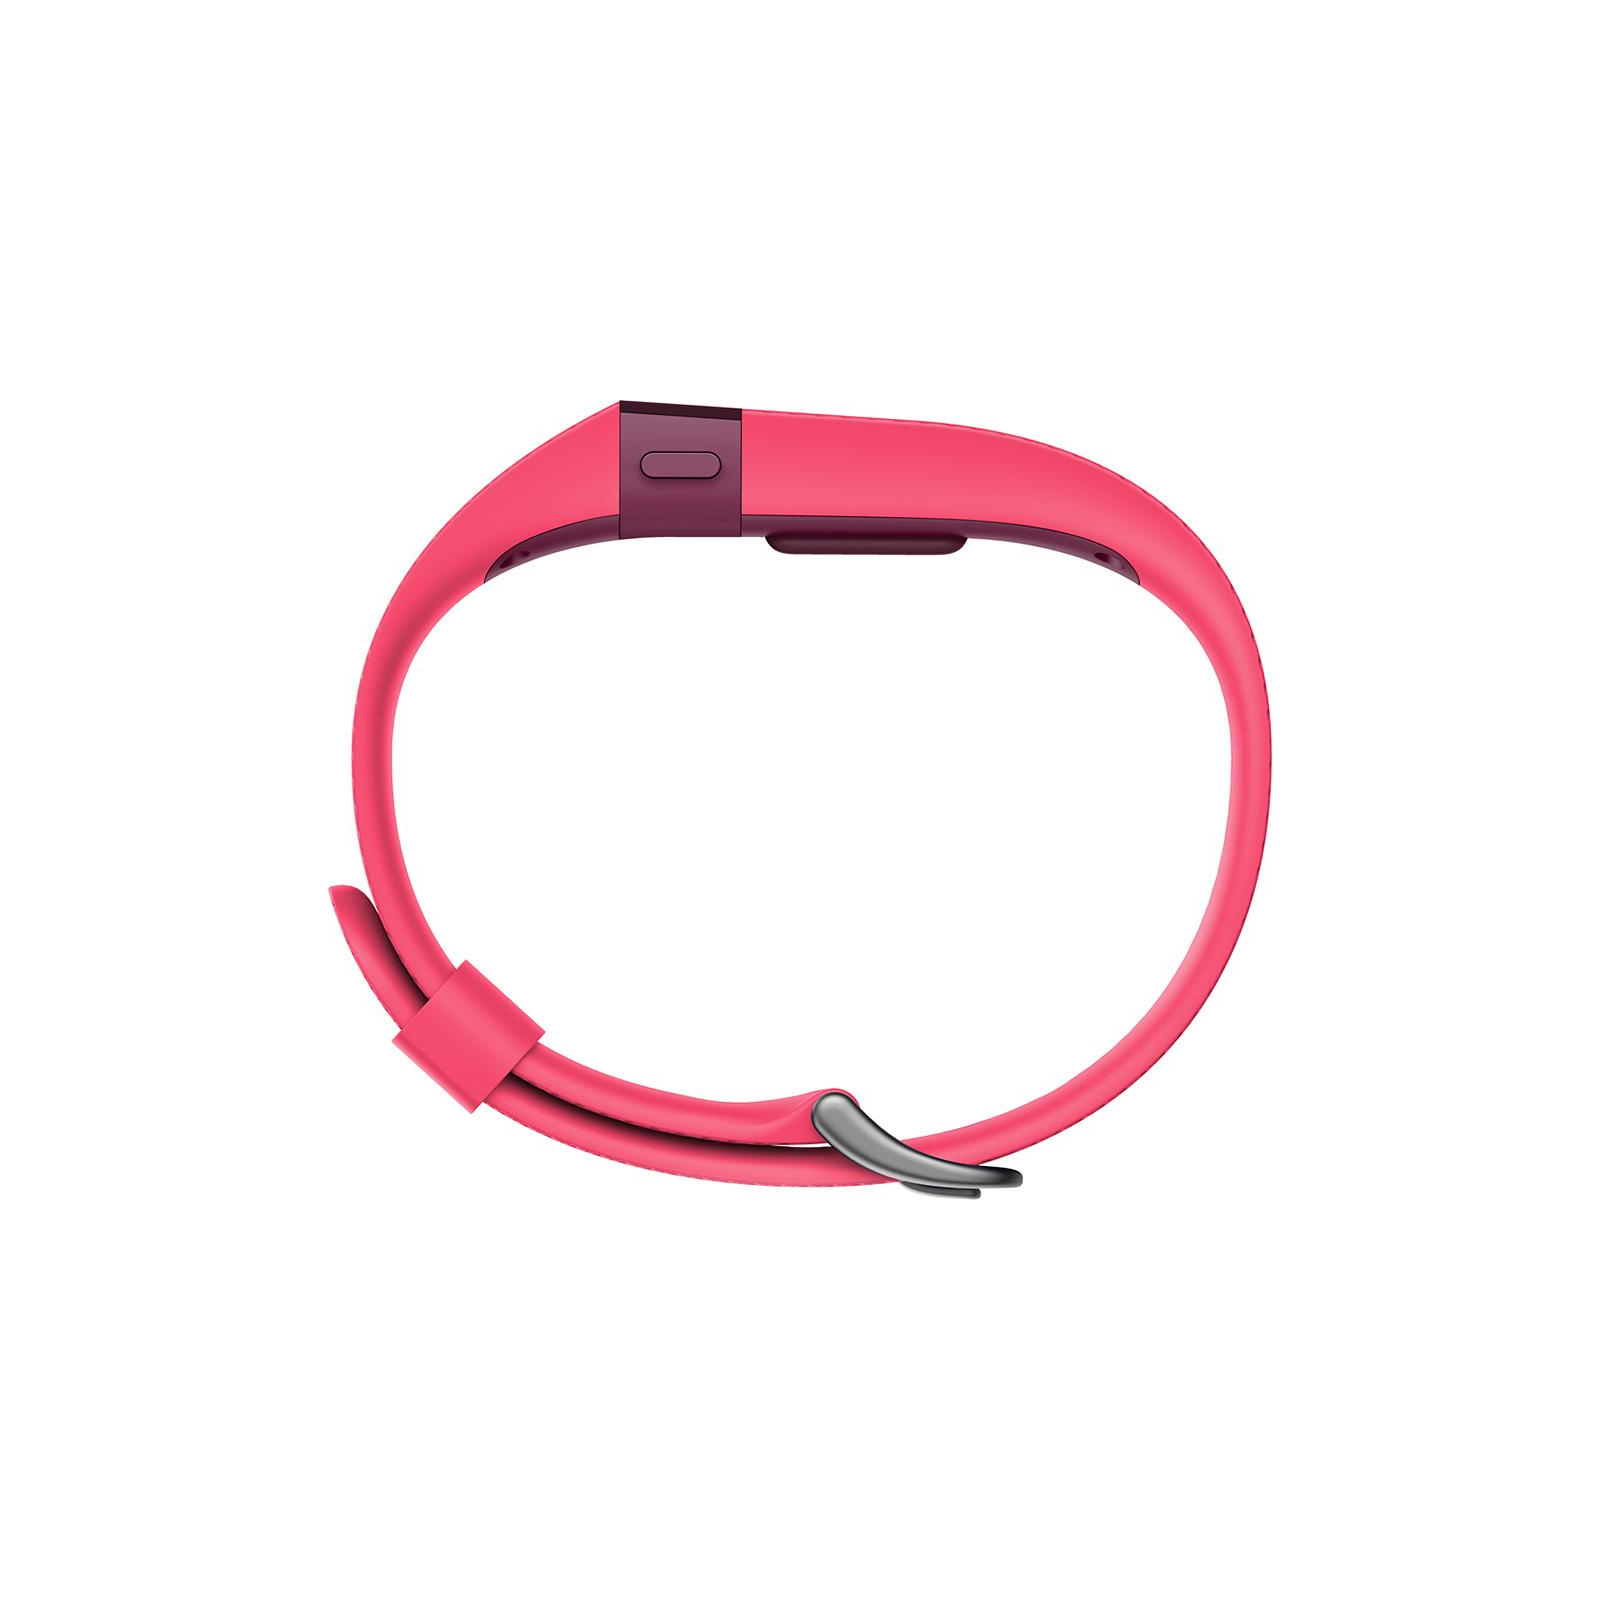 Фітнес браслет Fitbit Charge HR Large Pink зображення 2